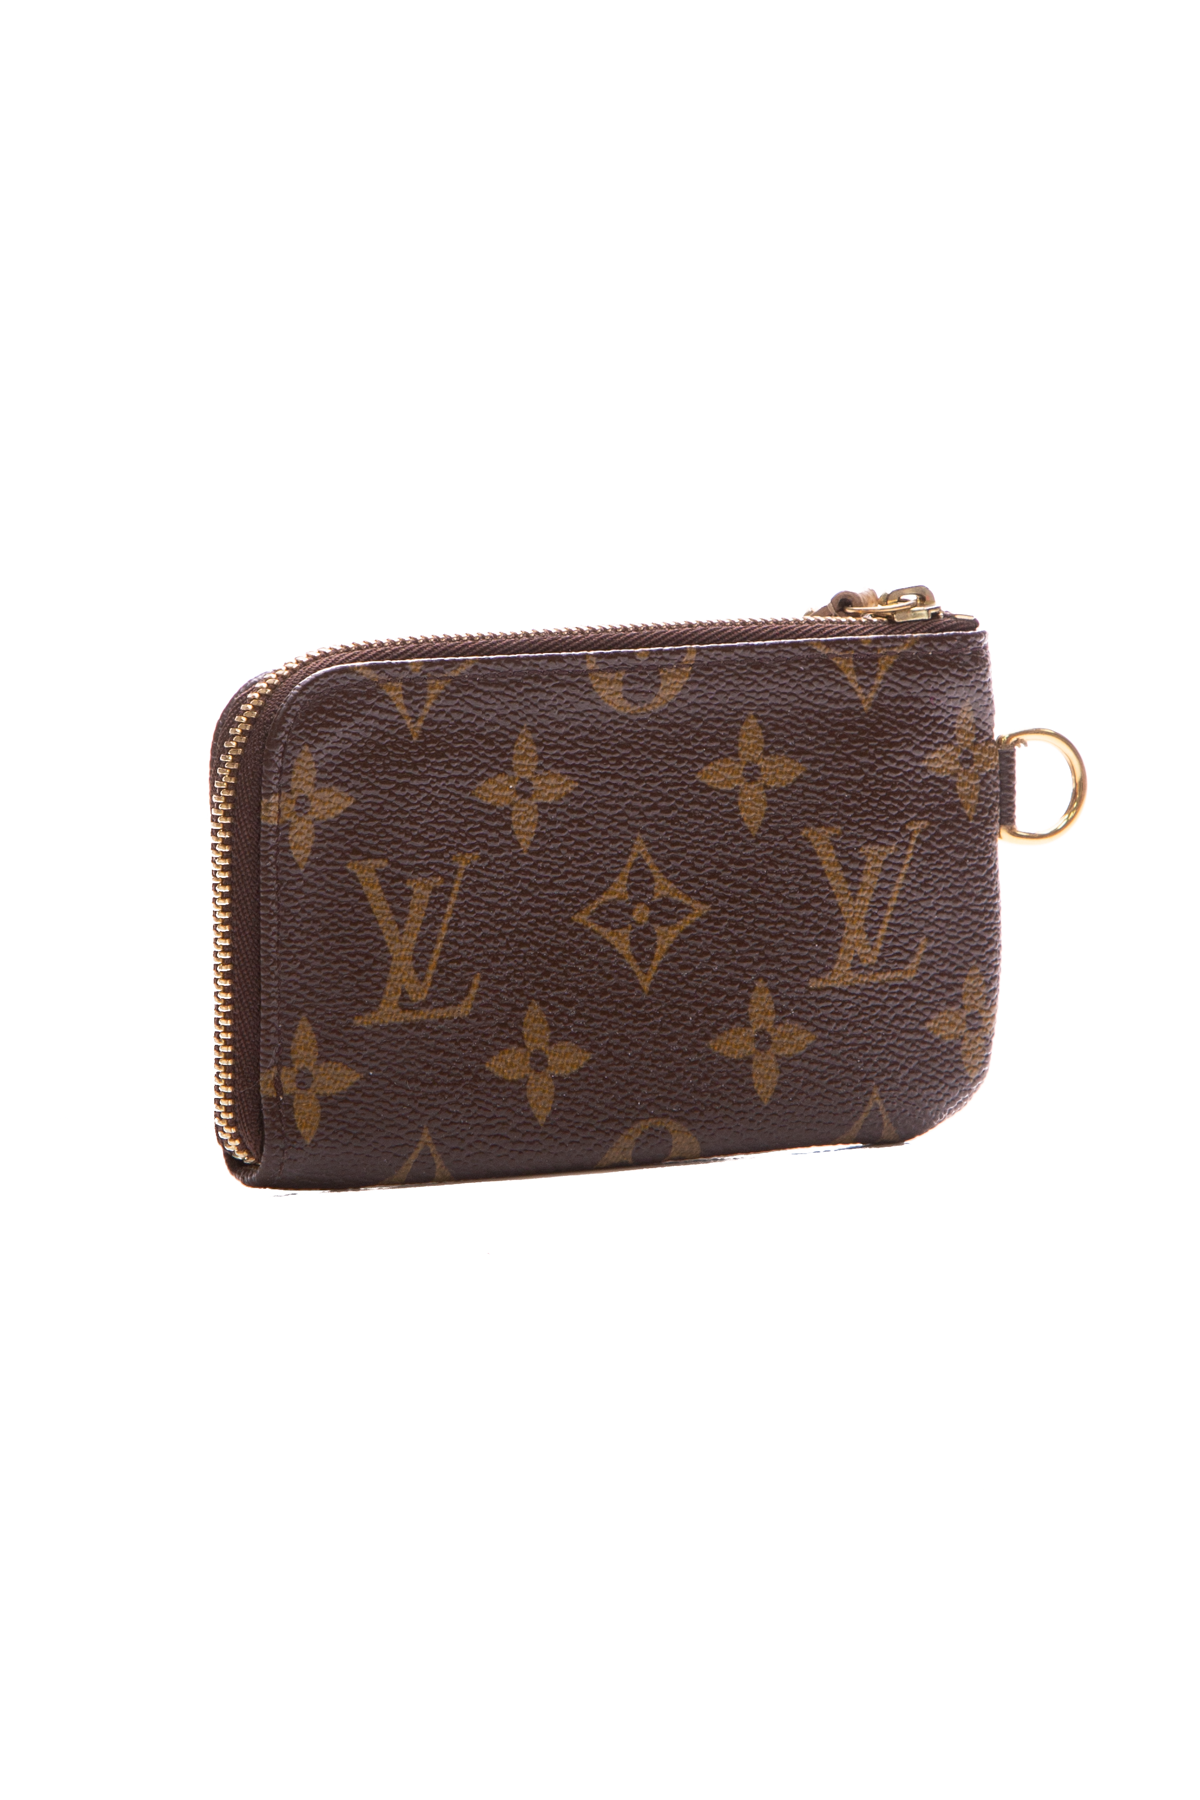 Louis Vuitton Monogram Complice Trunks Key Pouch